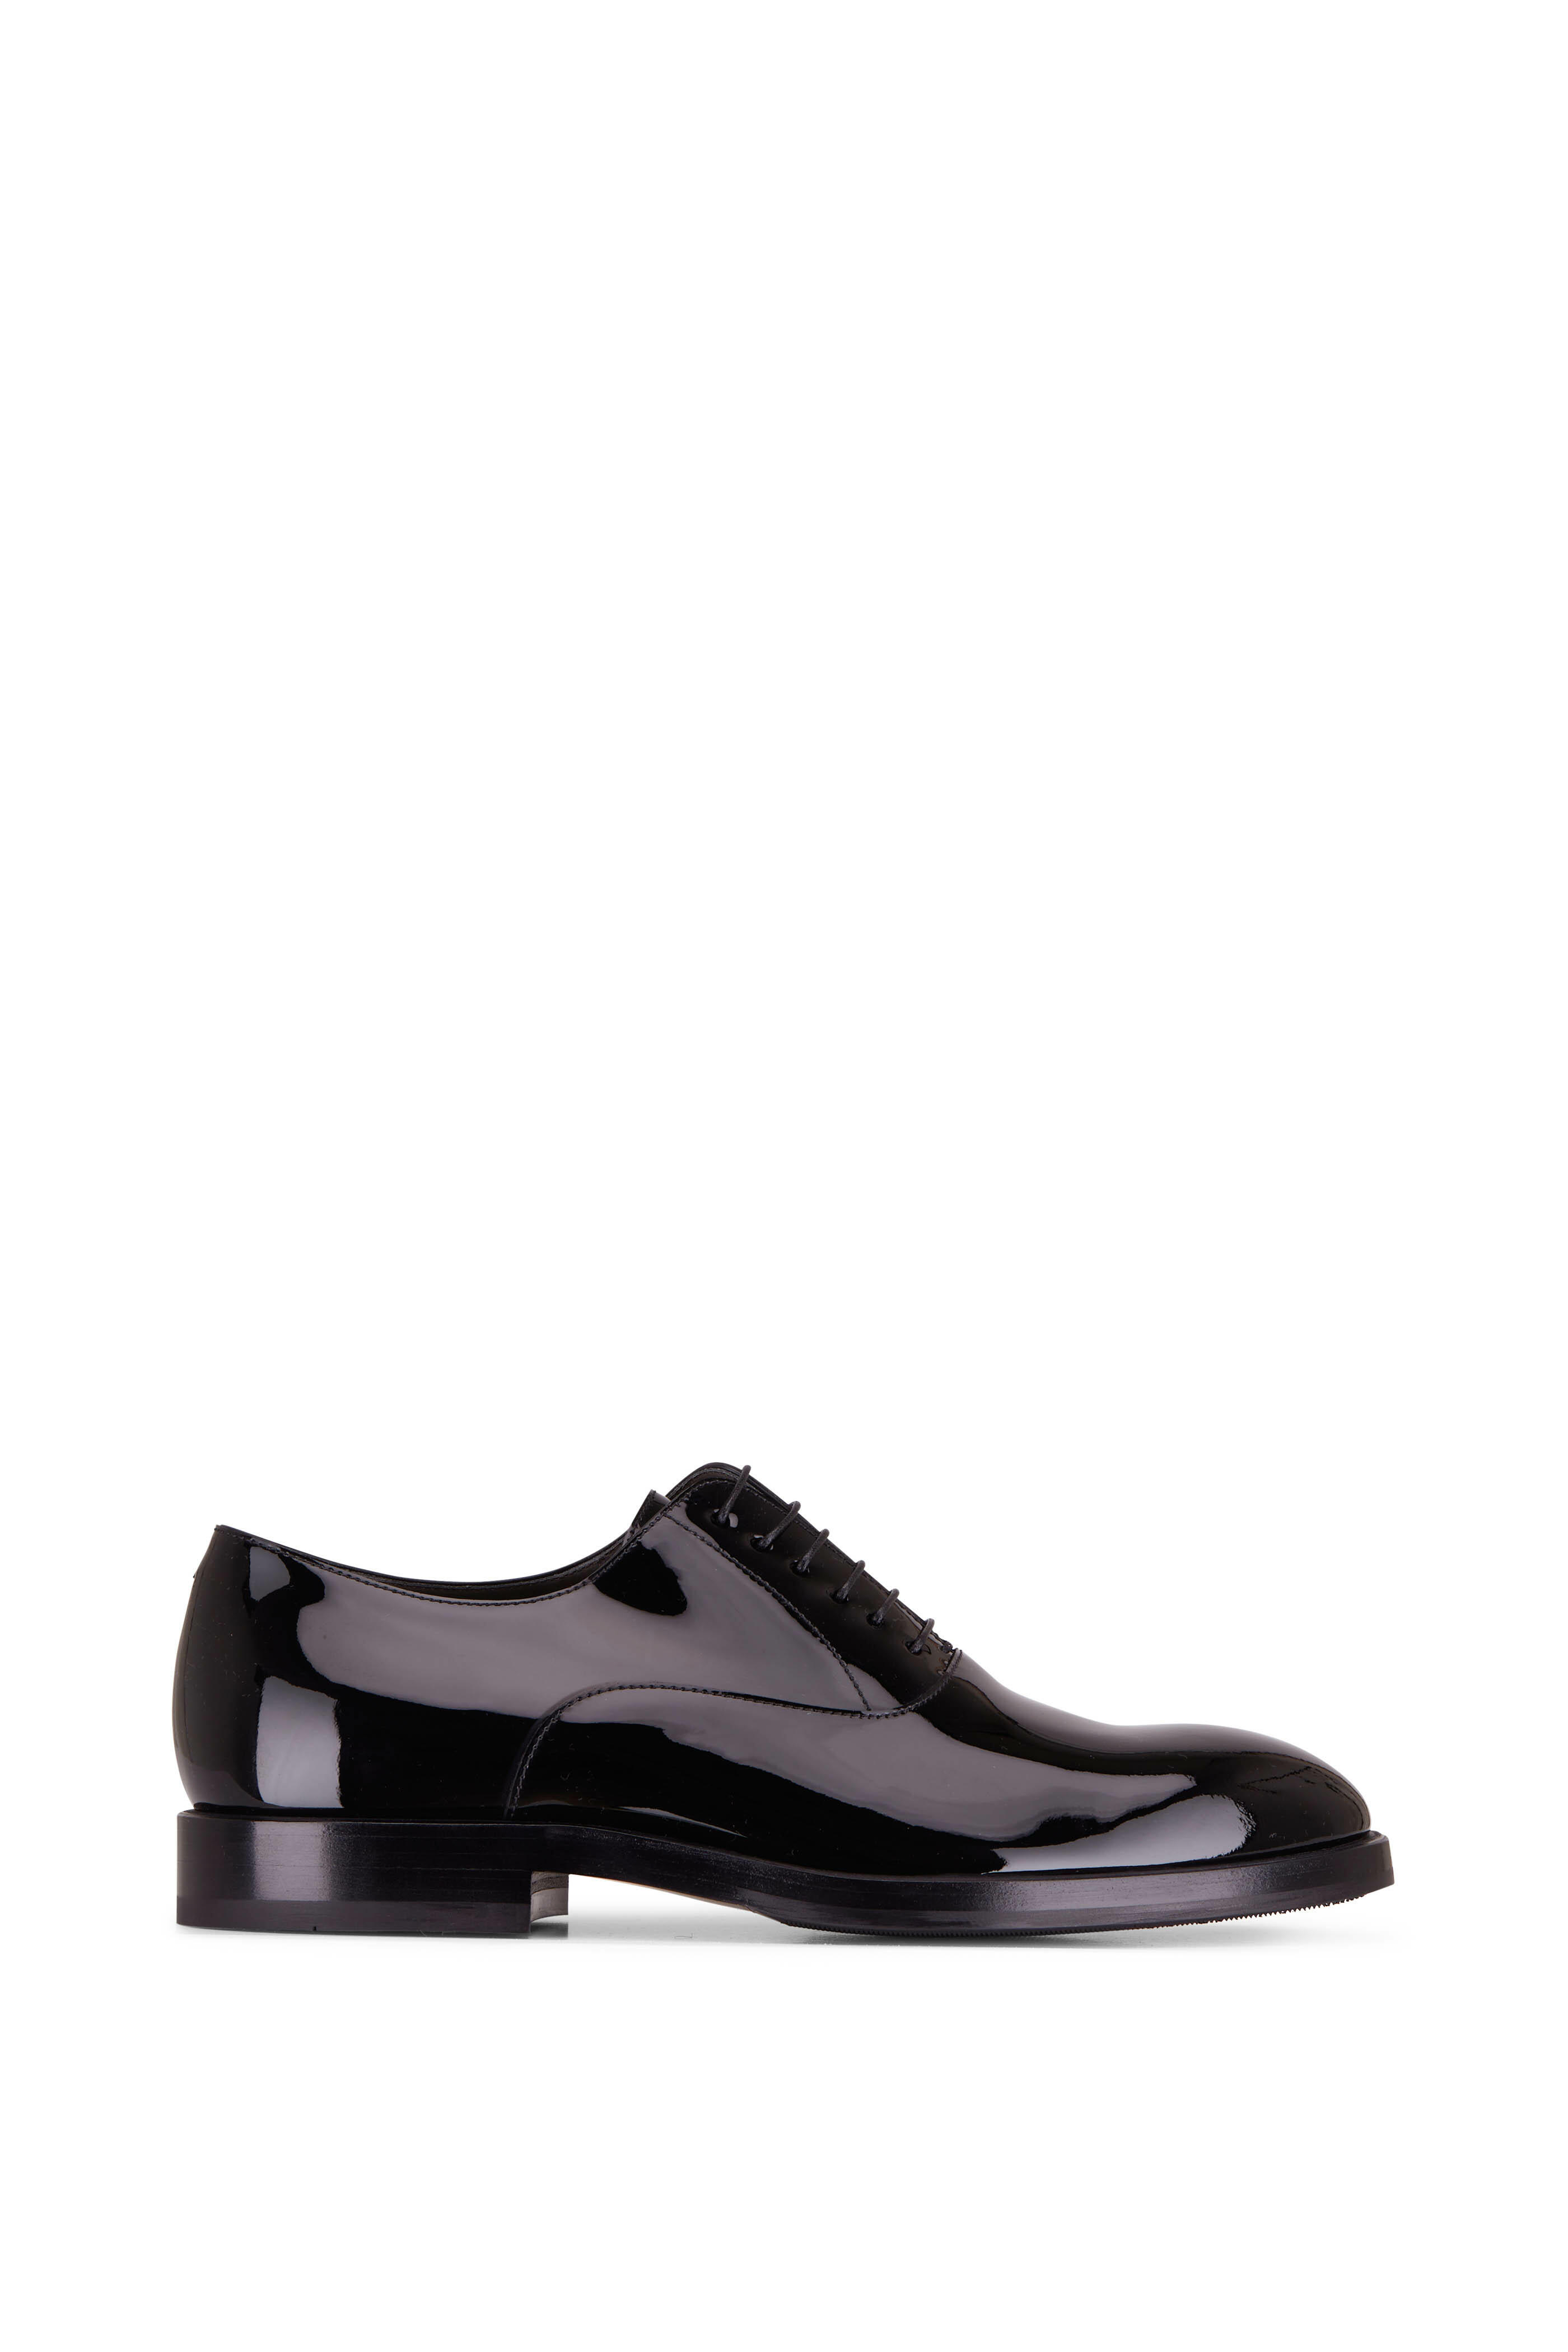 Brunello Cucinelli - Black Patent Leather Tuxedo Shoe